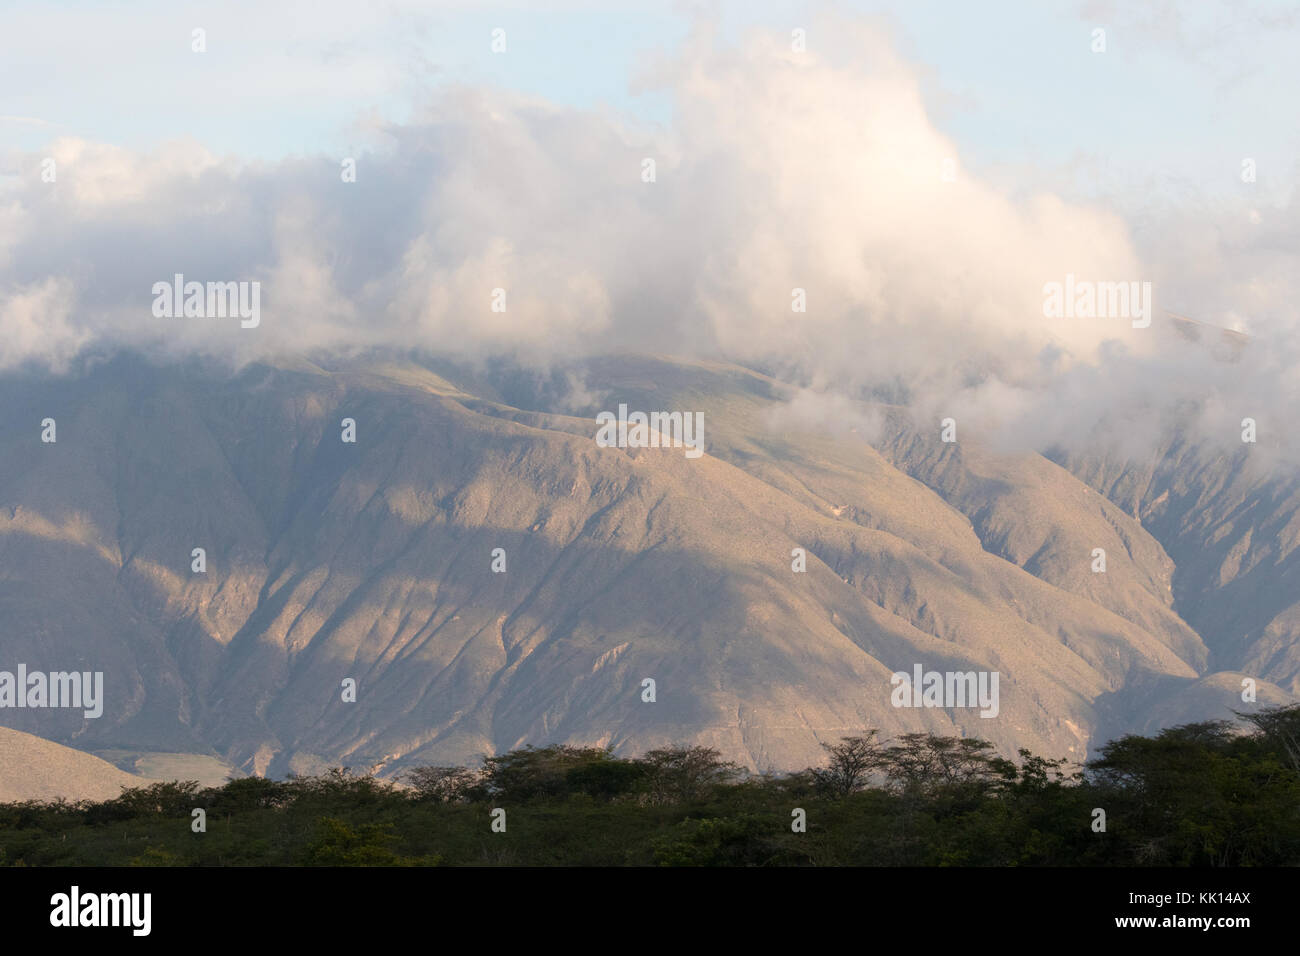 Ecuador landscape - mountains in the Northern highlands, Ecuador, South America Stock Photo